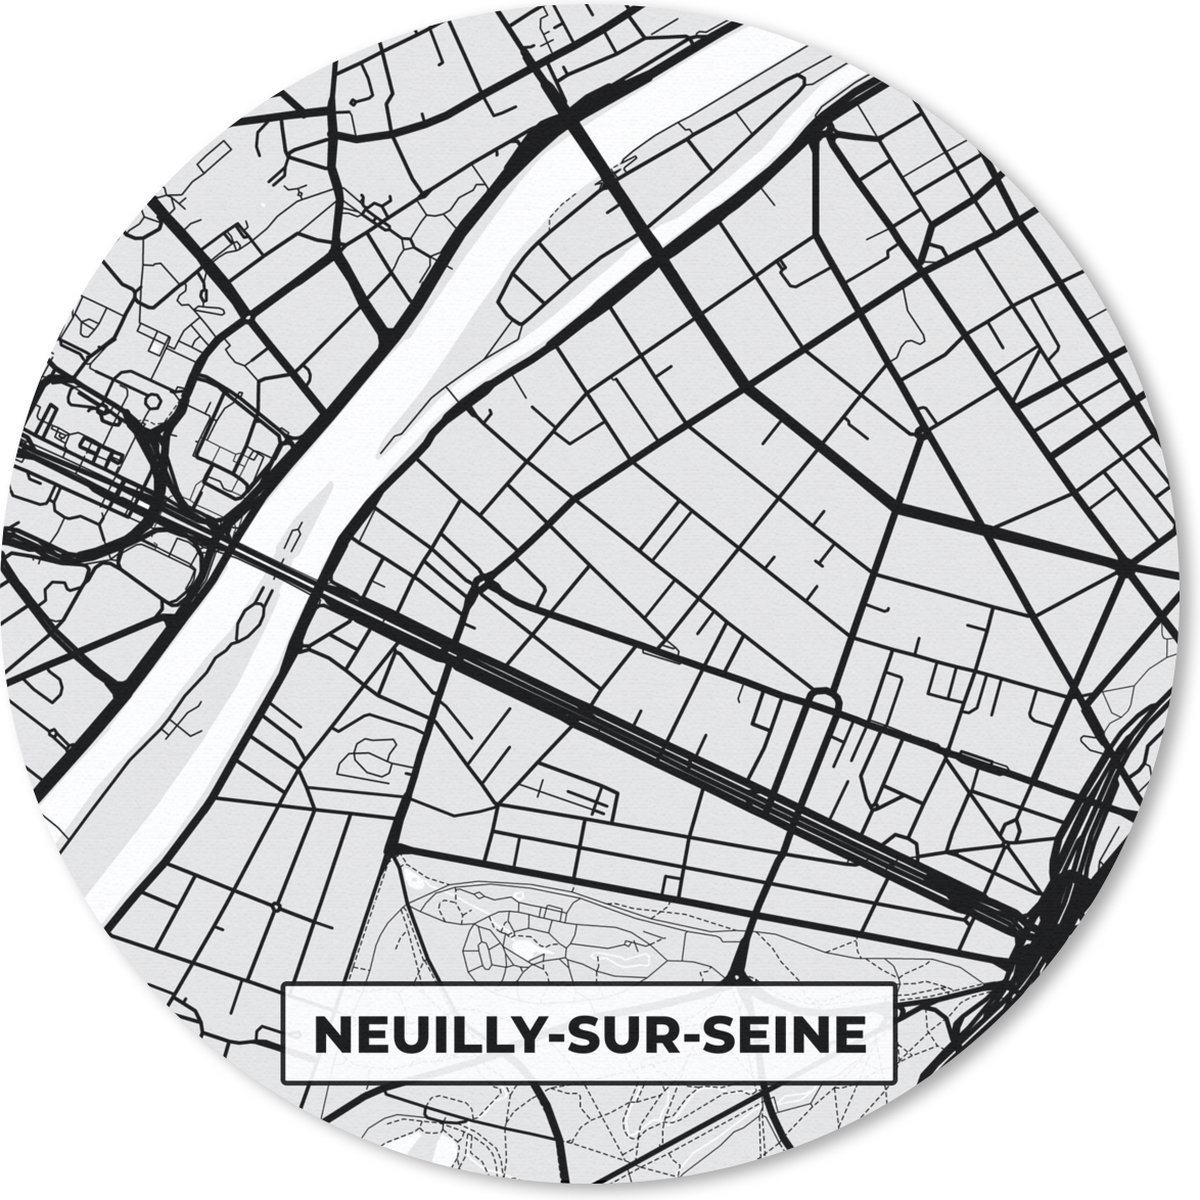 Muismat - Mousepad - Rond - Frankrijk - Plattegrond - Kaart - Neuilly-sur-Seine - Stadskaart - 30x30 cm - Ronde muismat